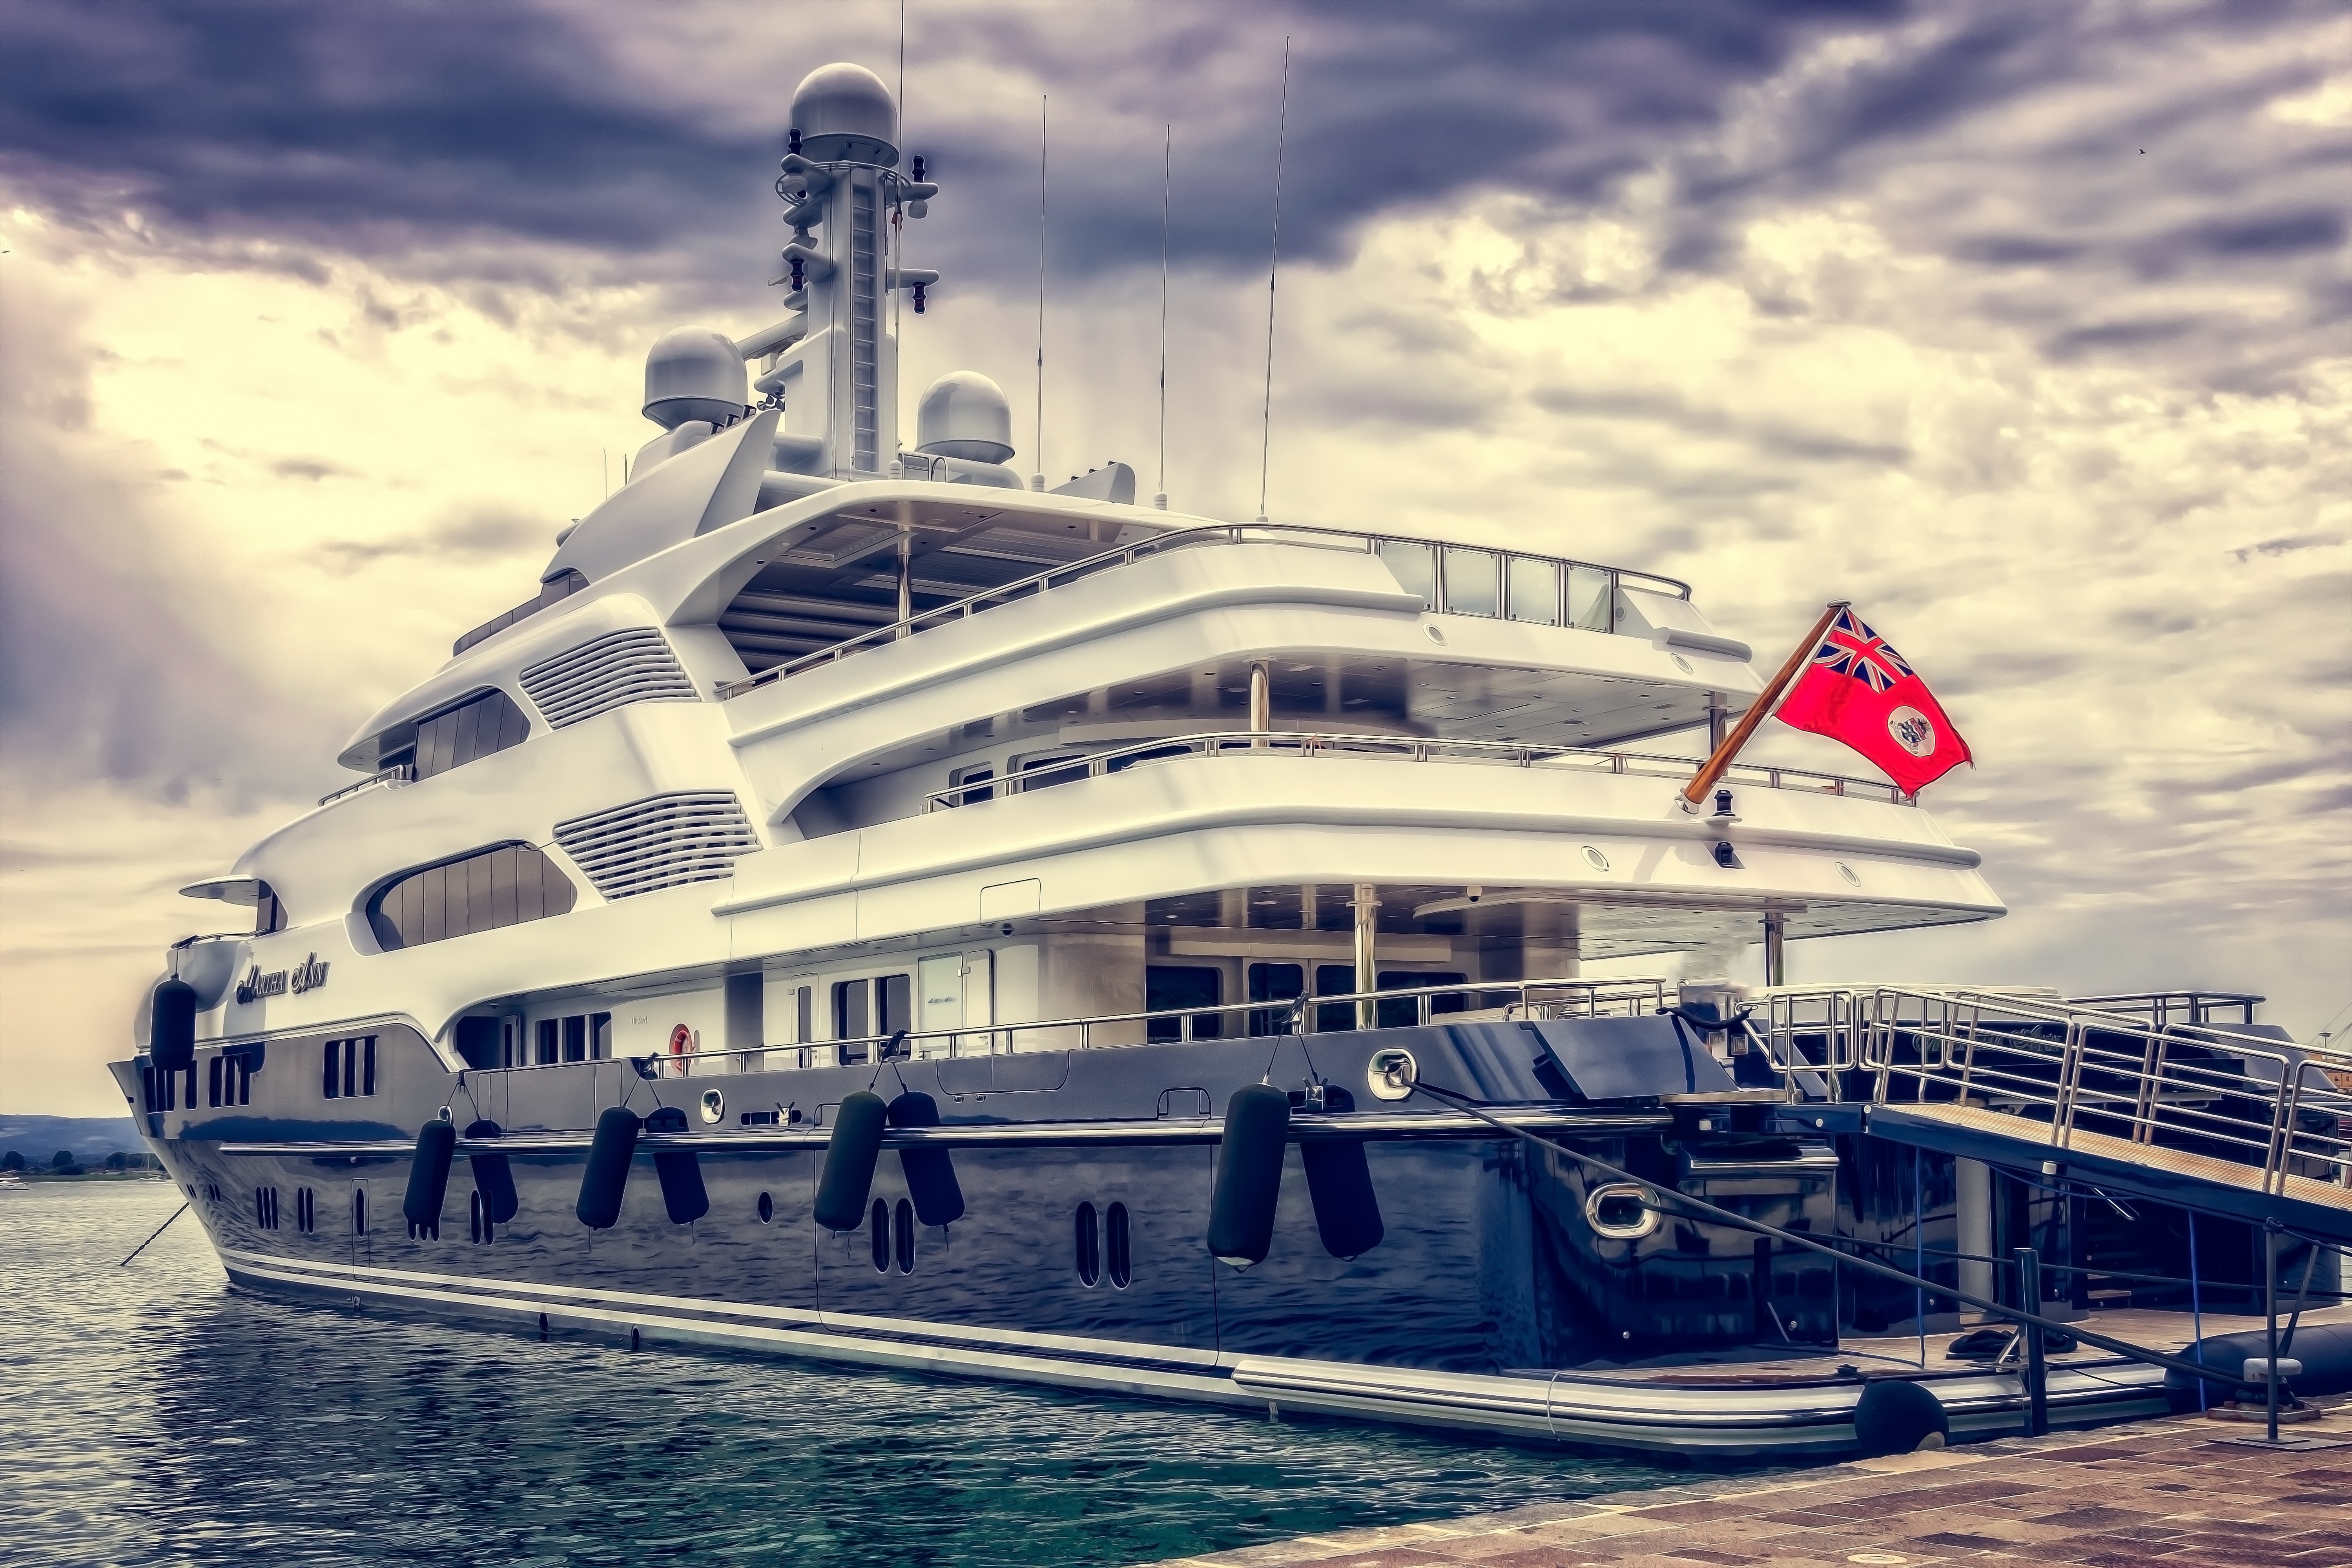 Яхт-шоу в Монако